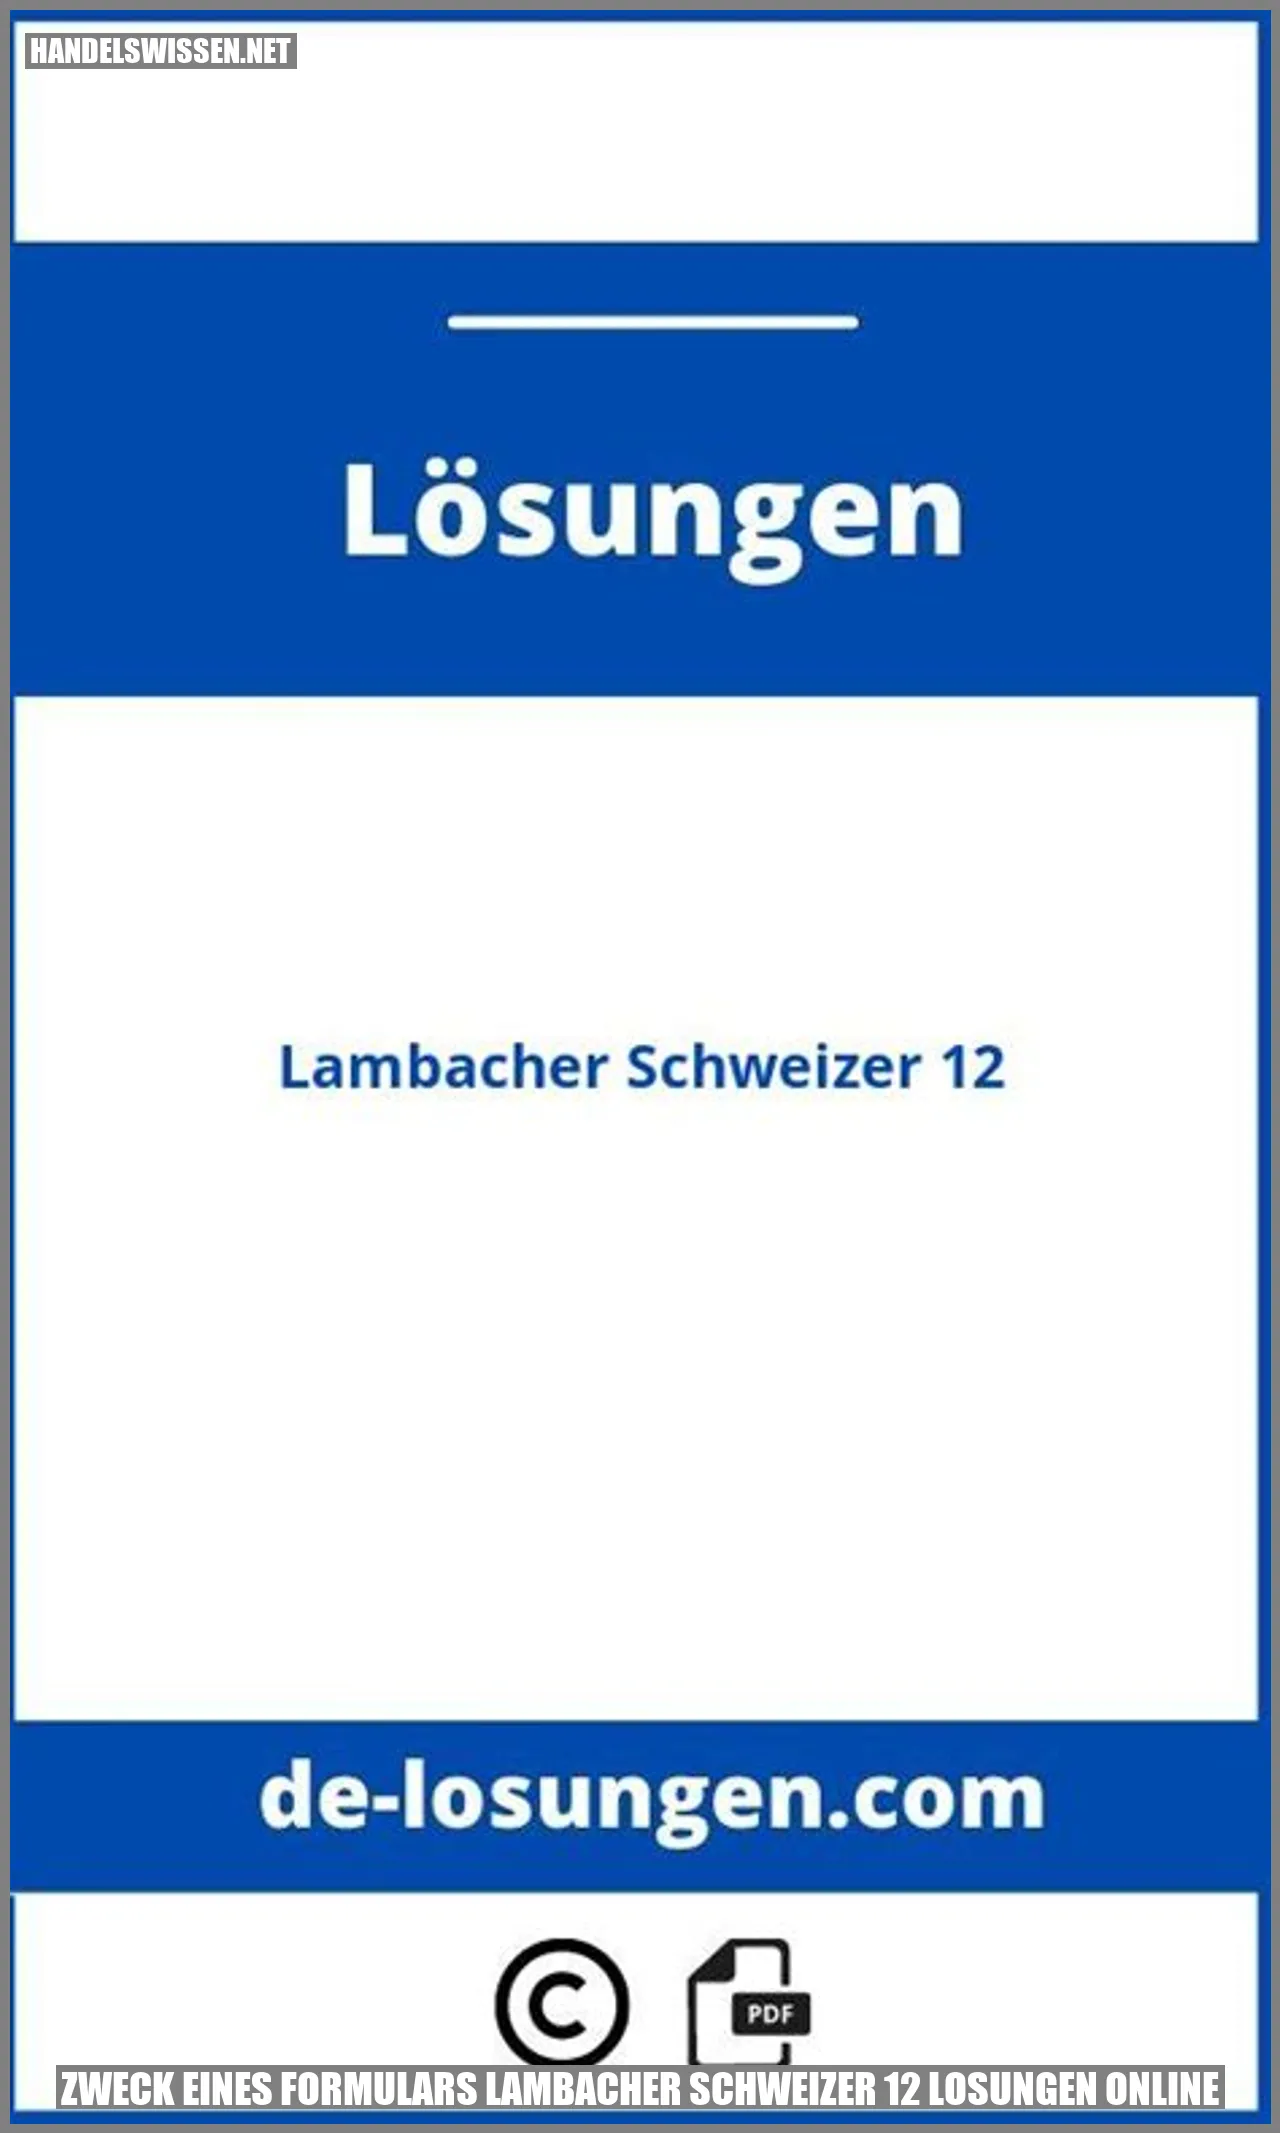 Zweck eines Formulars lambacher schweizer 12 losungen online